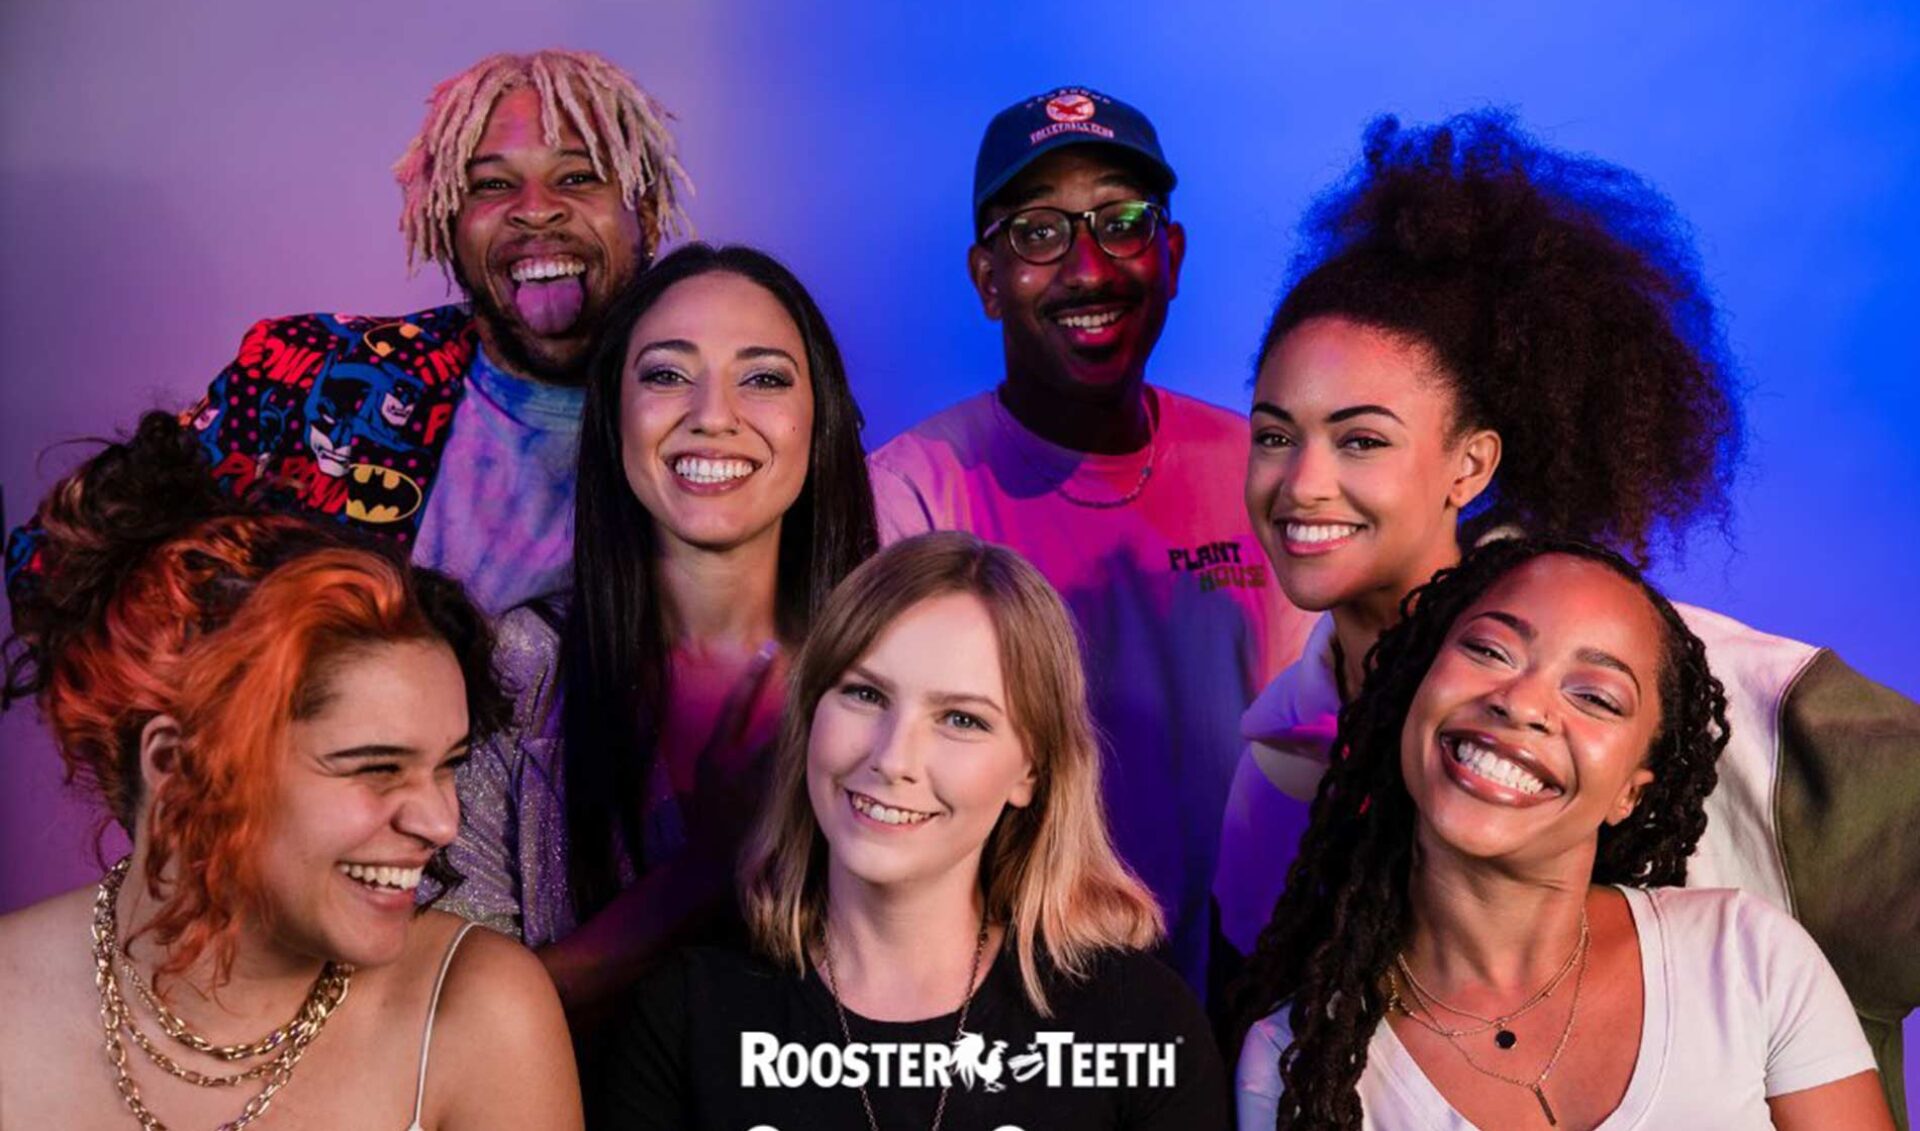 Rooster Teeth’s creator mentorship program is back